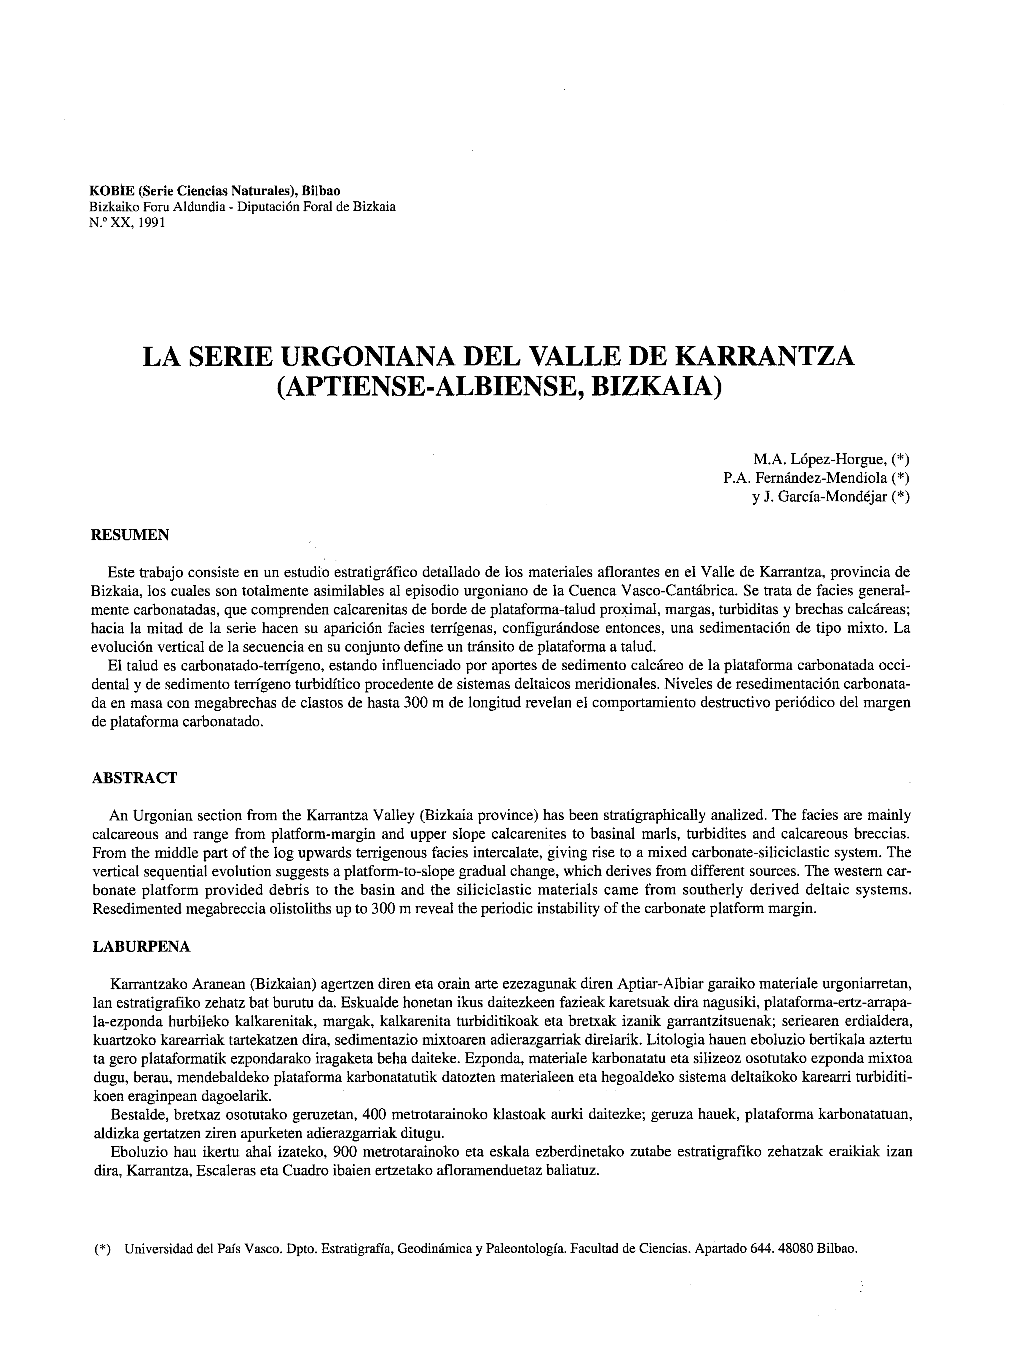 La Serie Urgoniana Del Valle De Karrantza (Aptiense-Albiense, Bizkaia)